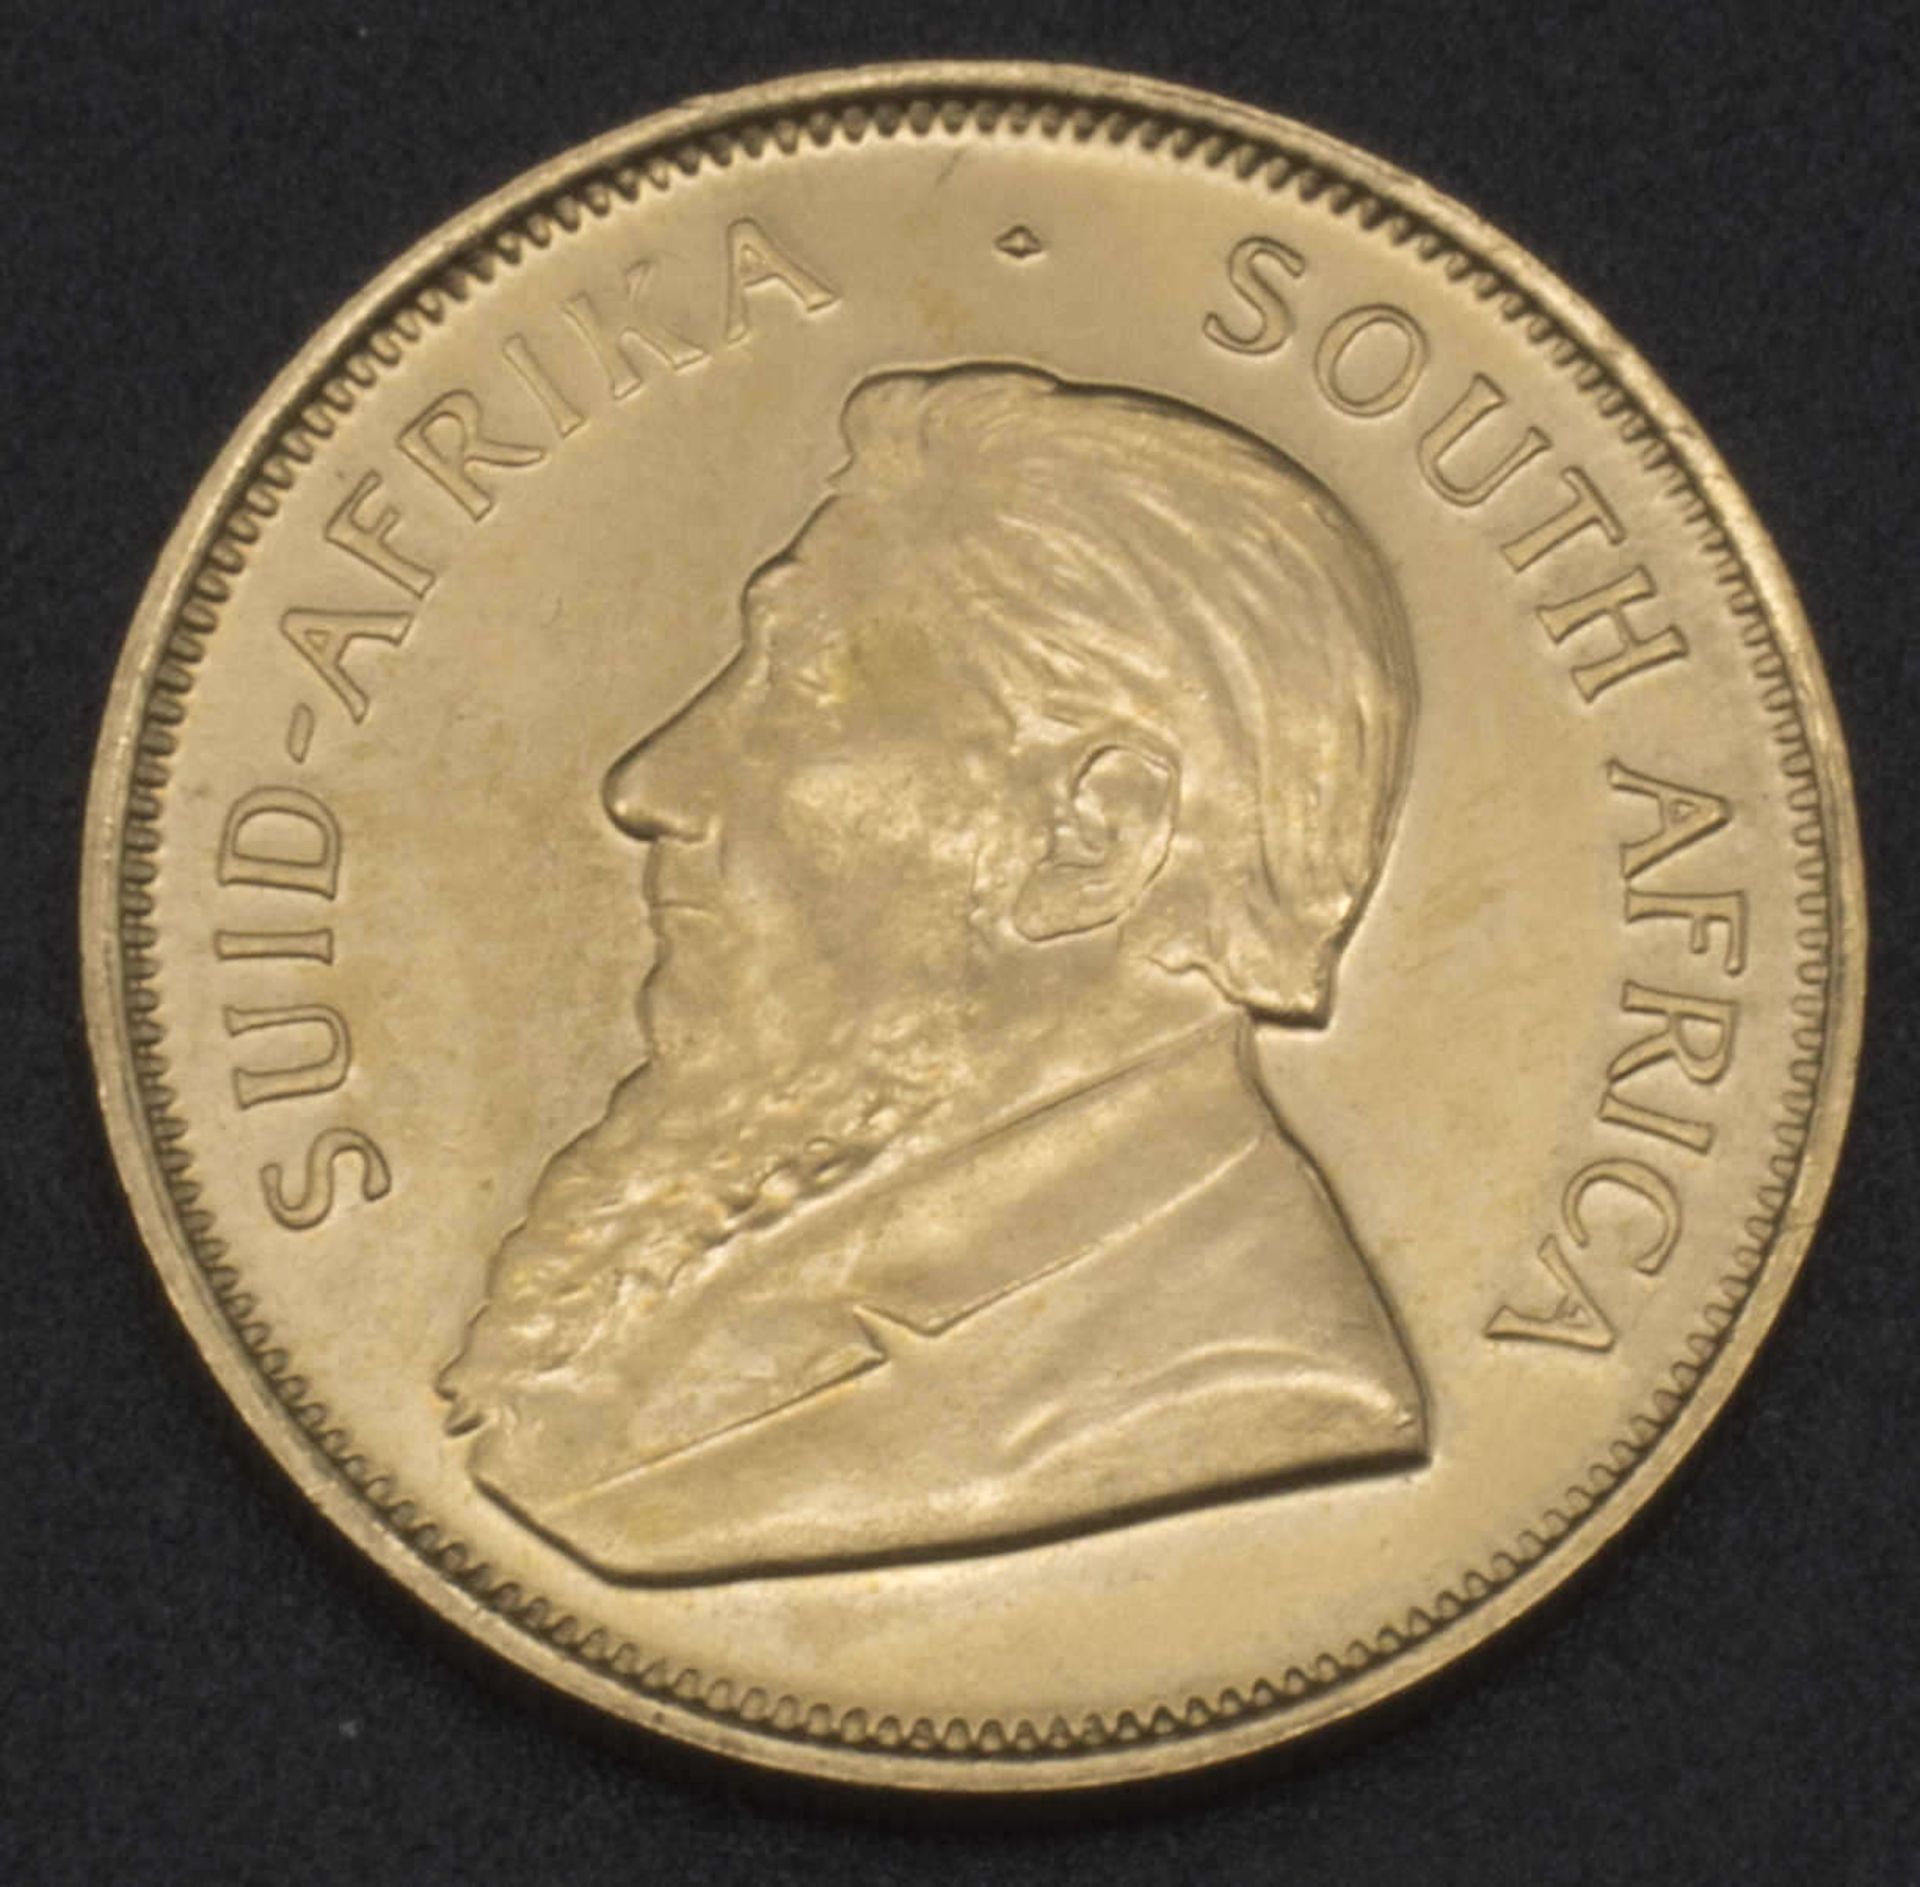 Goldmünze 1/2 Krügerrand. Südafrika 1982Gold coin 1/2 Krugerrand. South Africa 1982